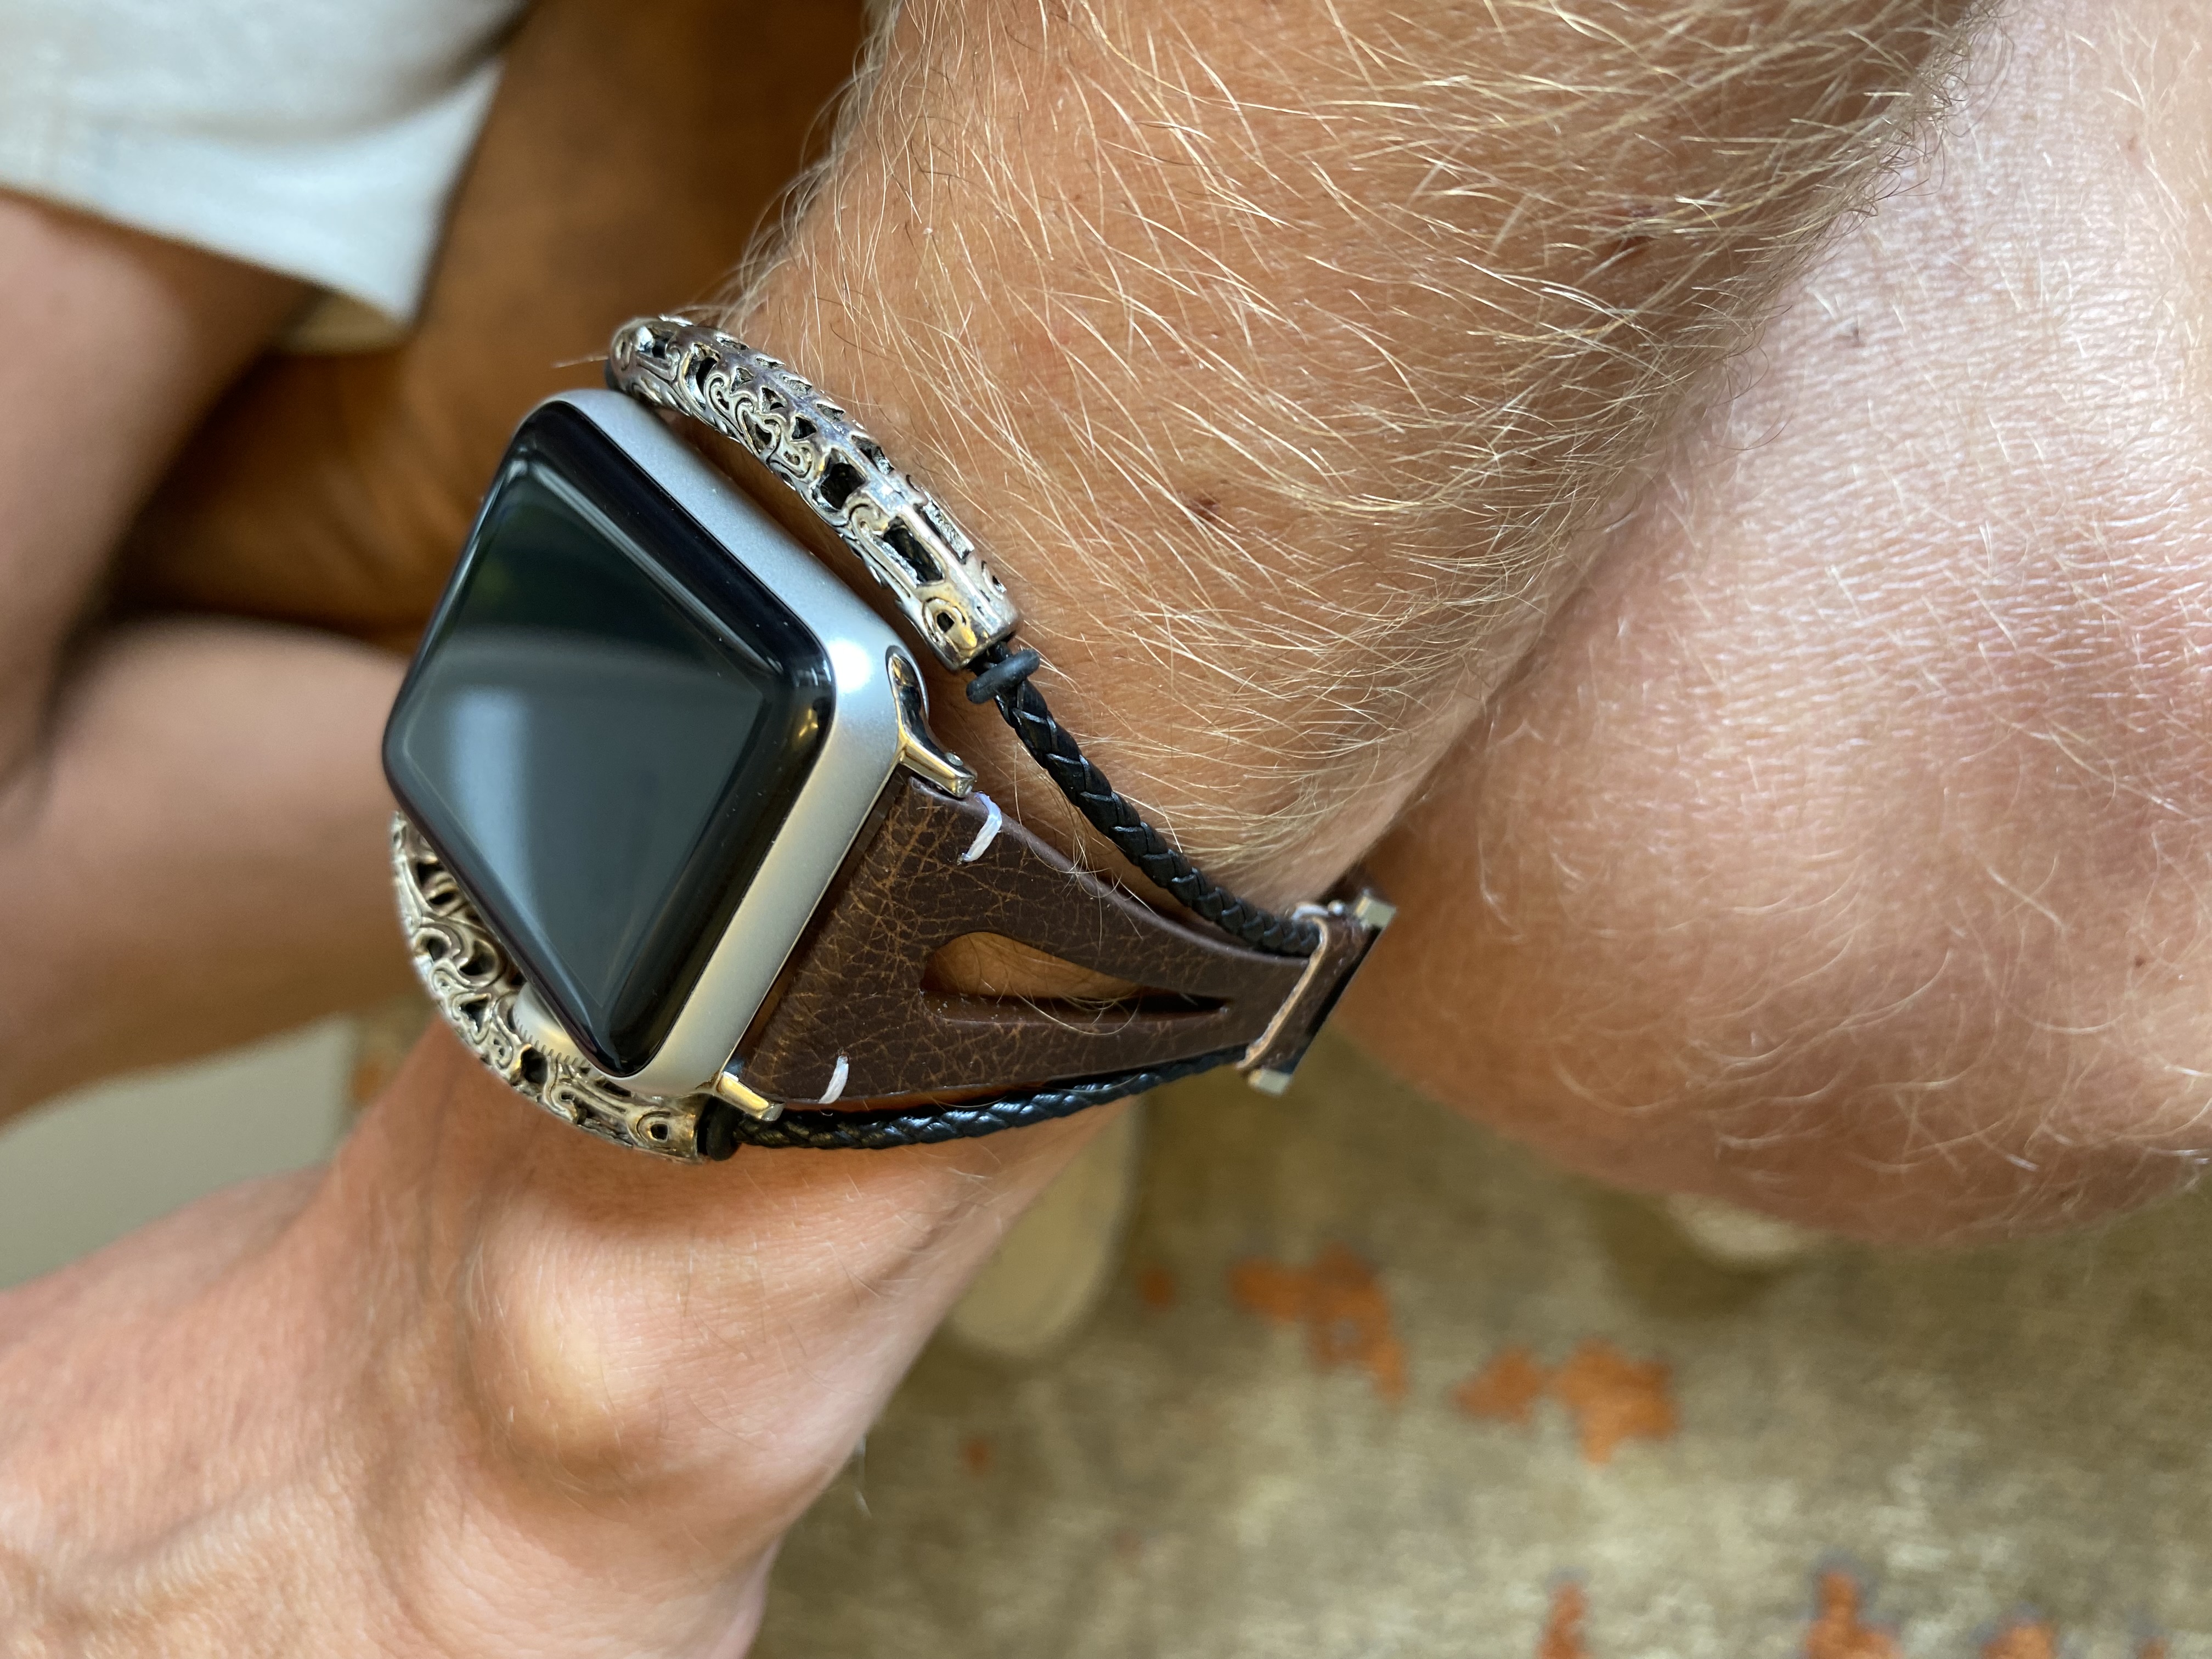  Apple Watch bőr ékszerpánt - barna